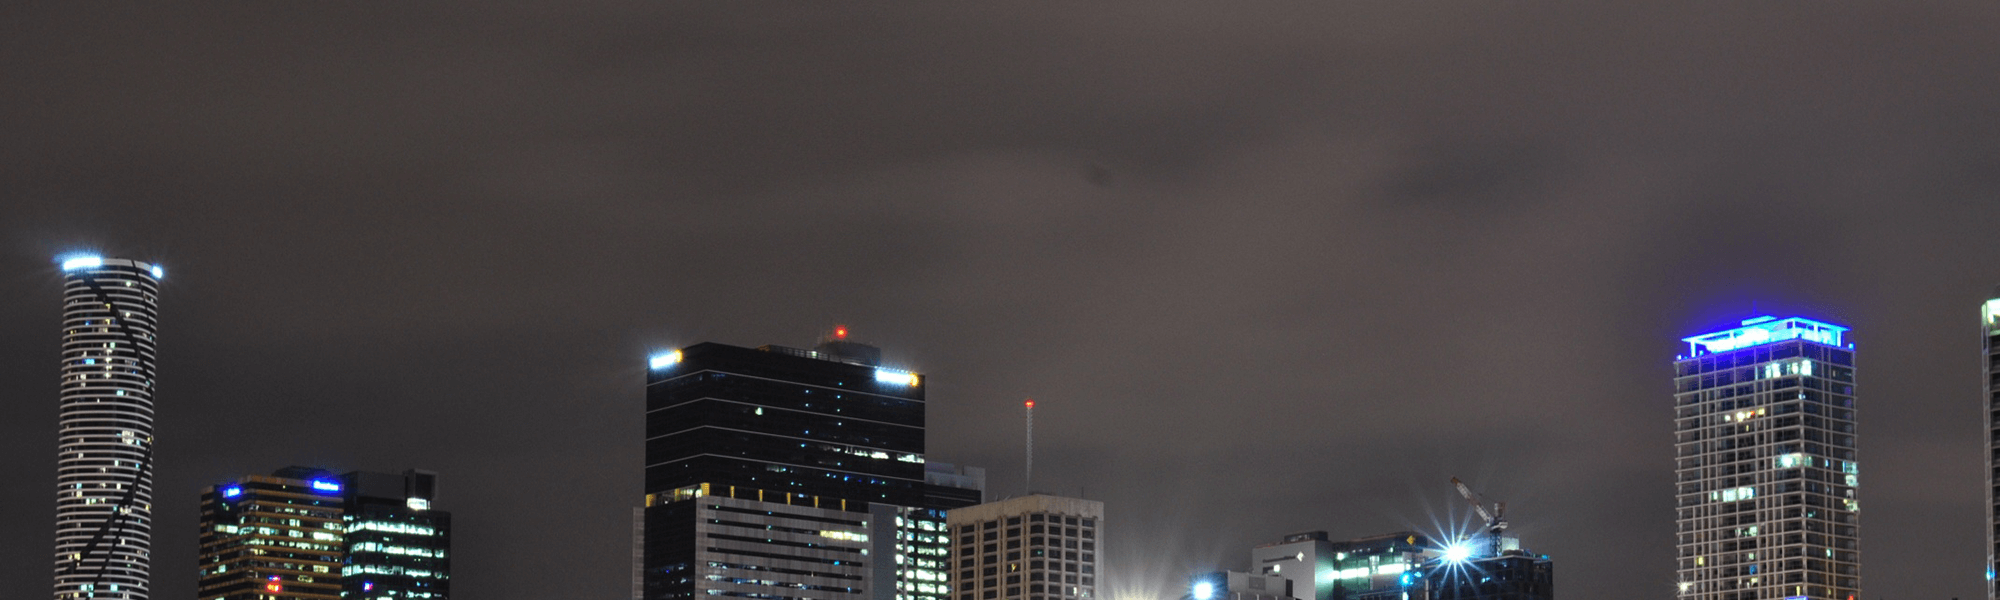 Brisbane CBD Night Skyline